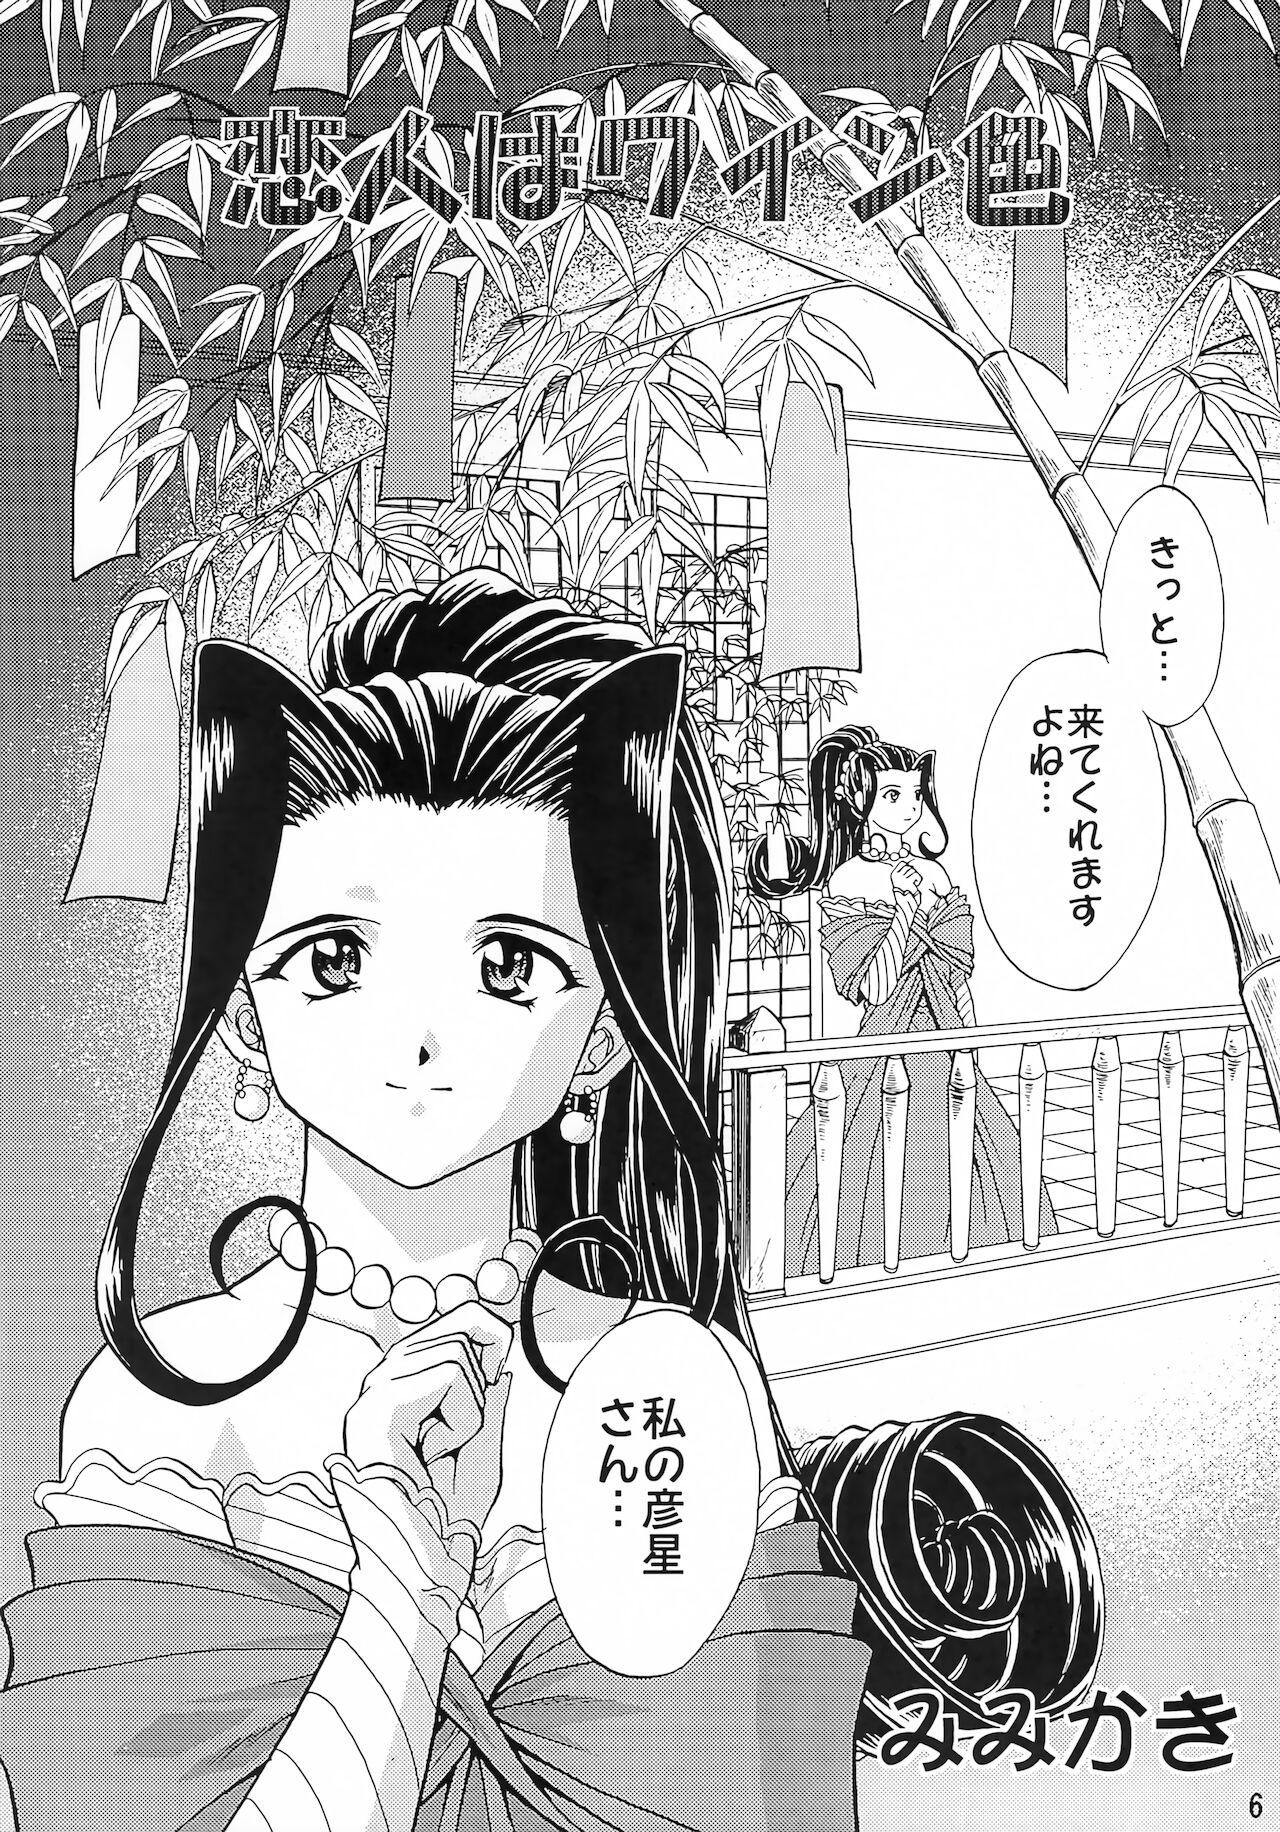 Slutty Otome-tachi no Koiuta Go - Sakura taisen | sakura wars Homosexual - Page 5